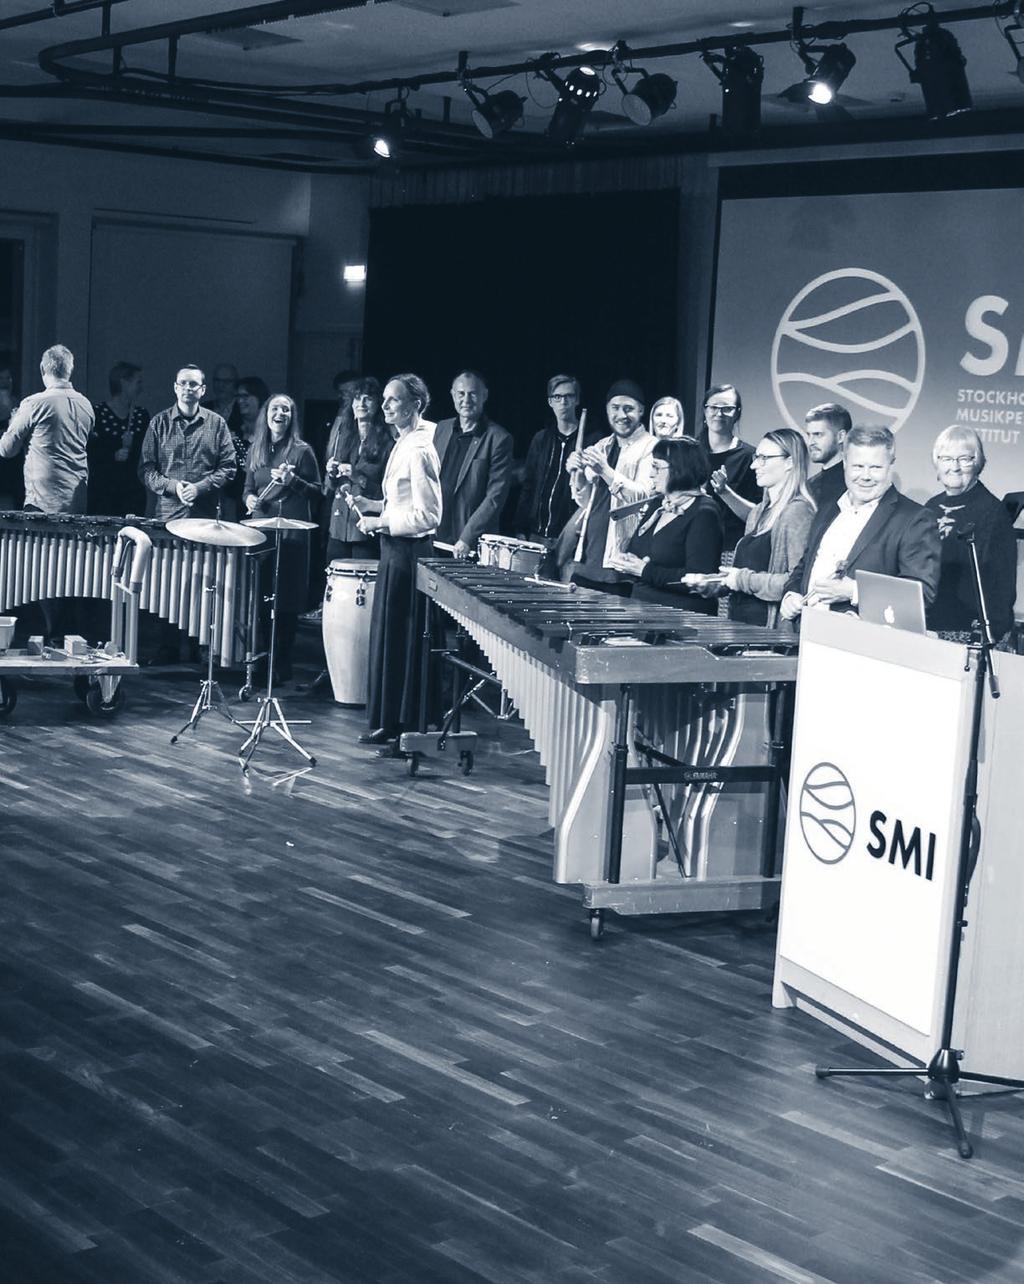 SMI:s slagverkslärare Anders Holdar bjuder upp publiken till ett gemensamt framträdande i Konsertsalen vid invigningen av SMI:s lokaler den 26 oktober 2017.